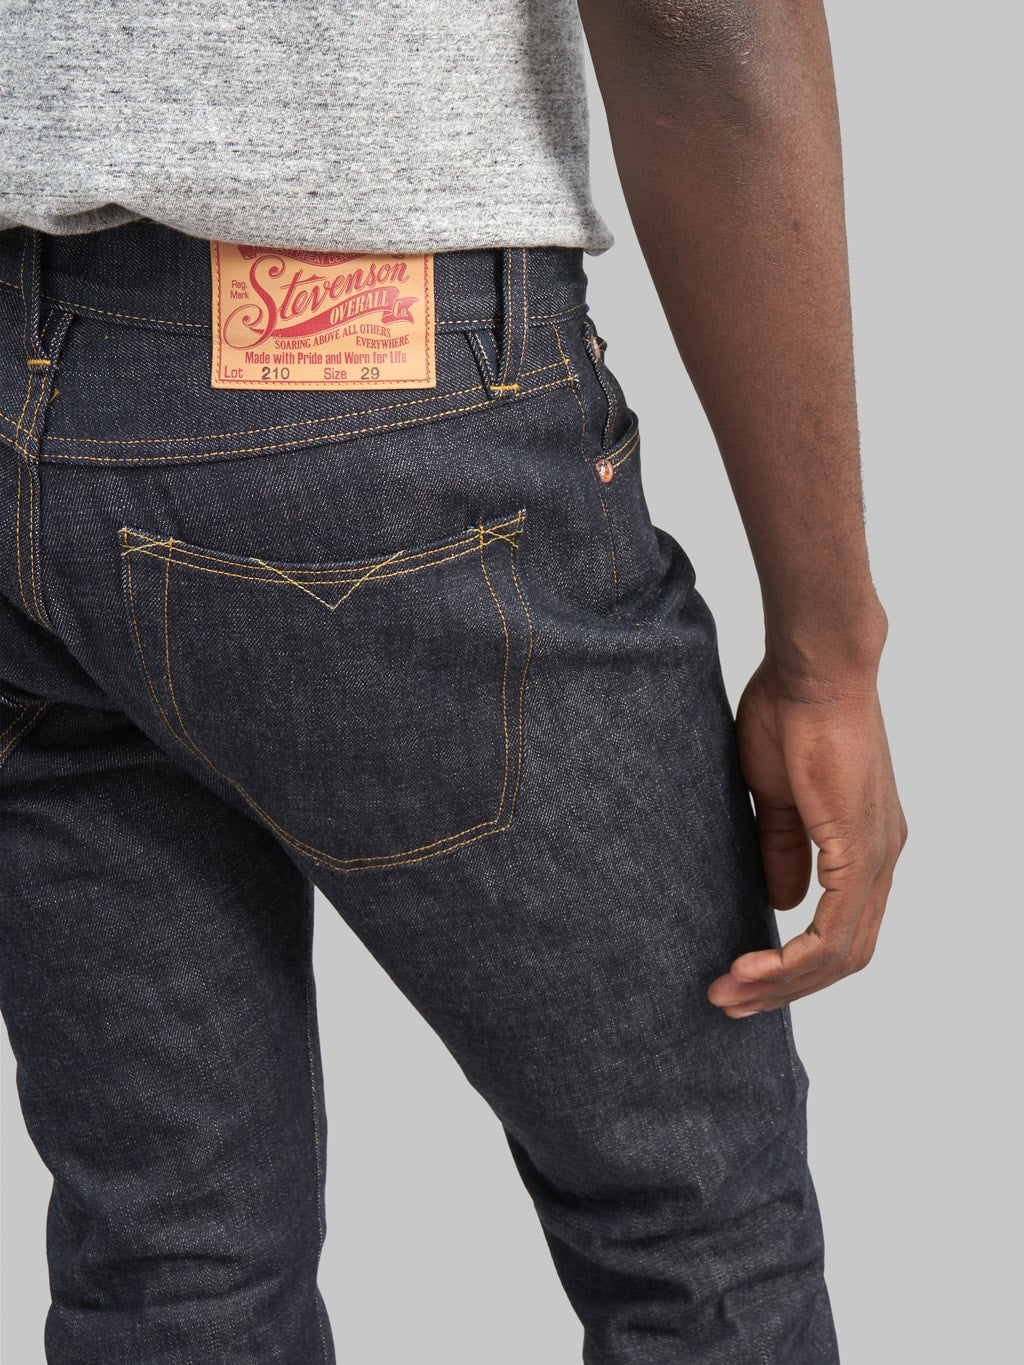 Stevenson Overall Big Sur 210 slim tapered jeans back pocket